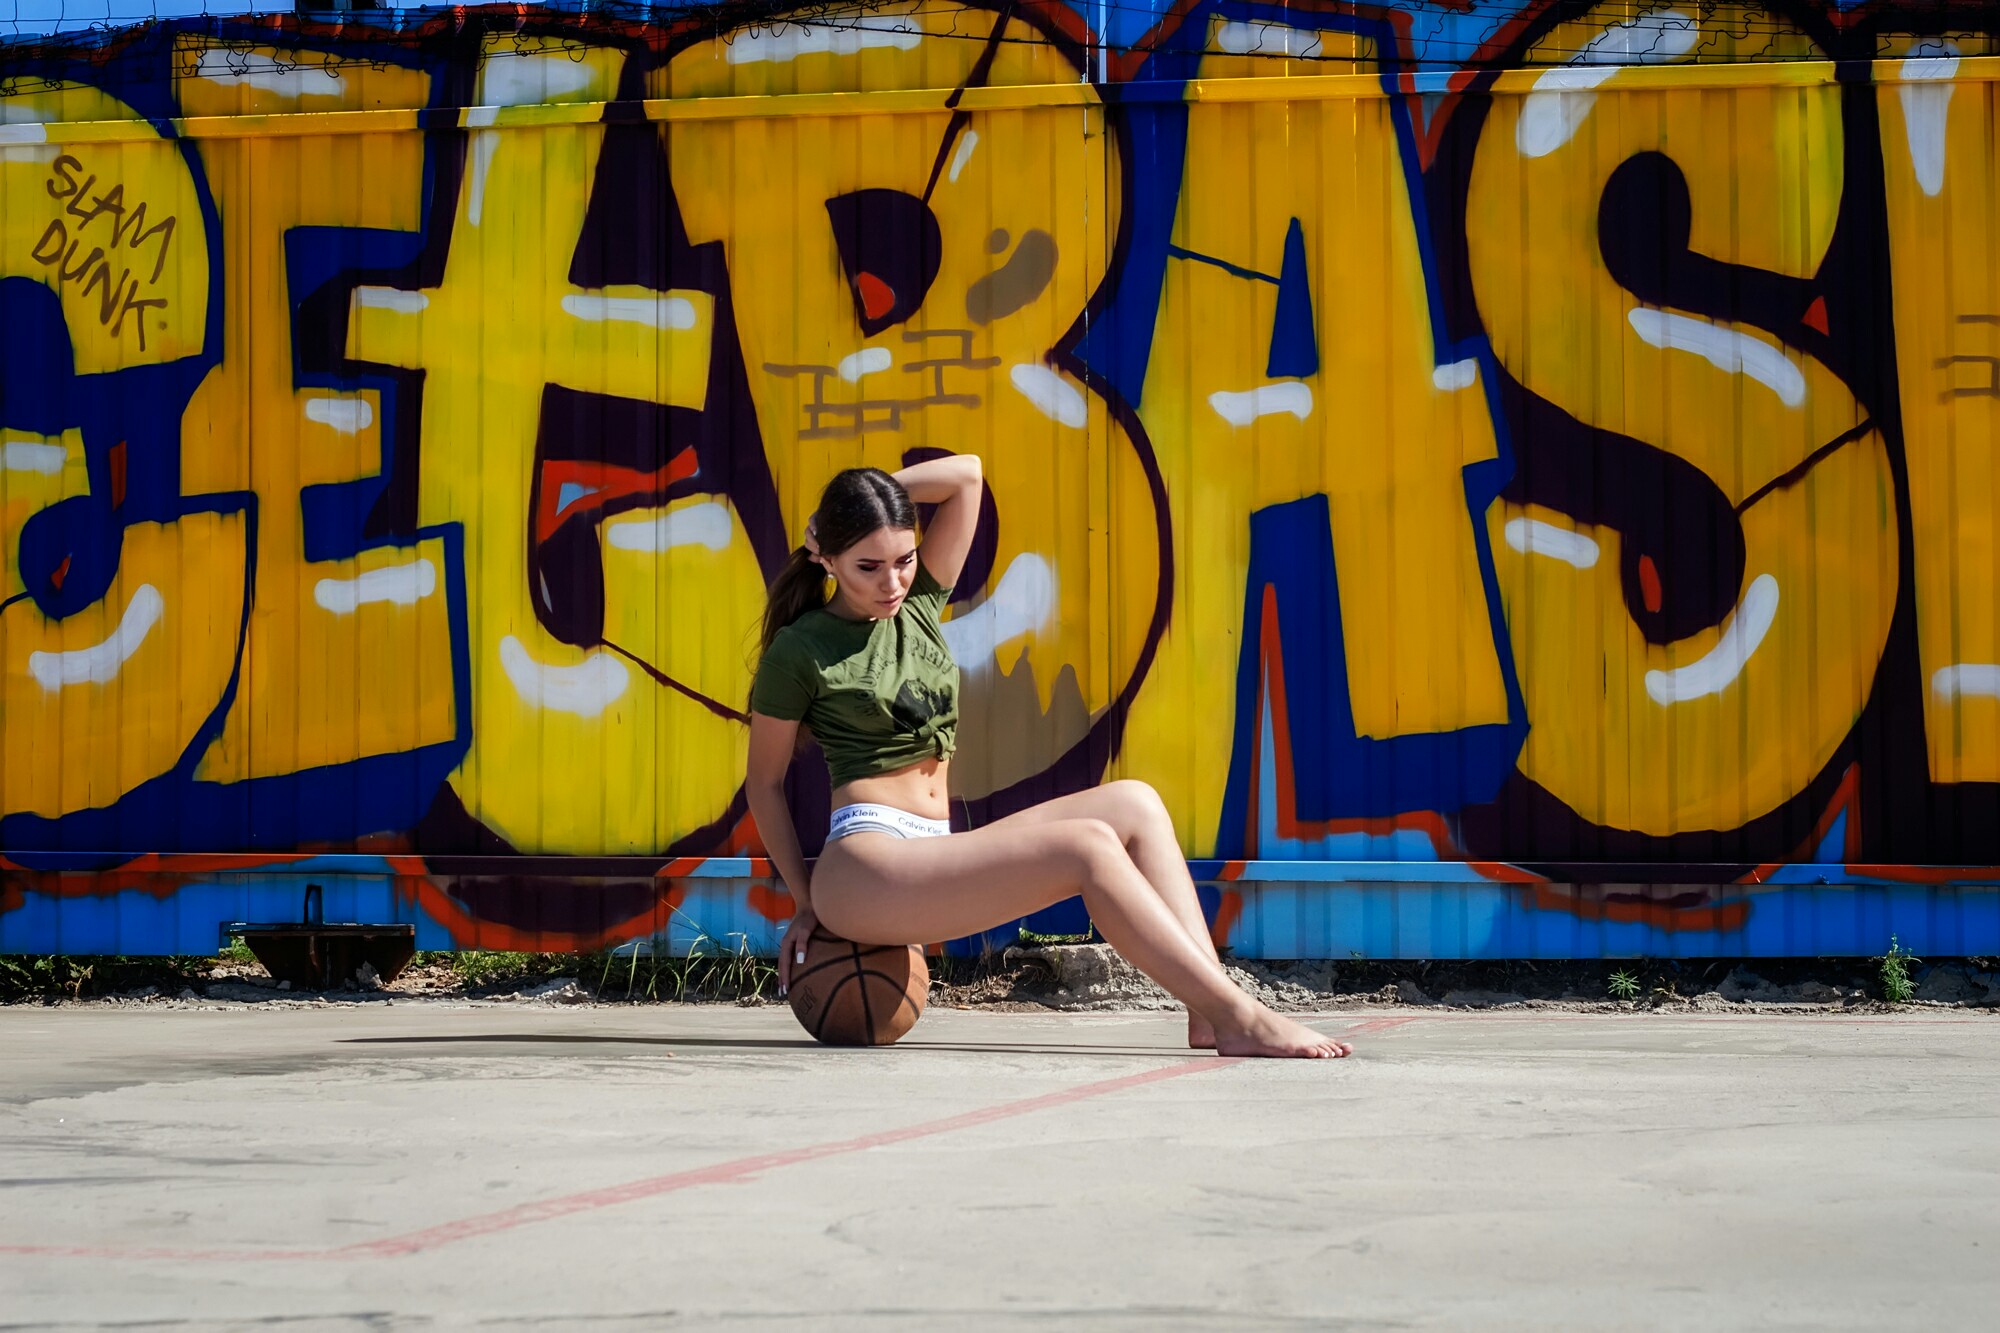 People 2000x1333 women T-shirt ball sitting Calvin Klein belly women outdoors graffiti brunette basketball outdoors